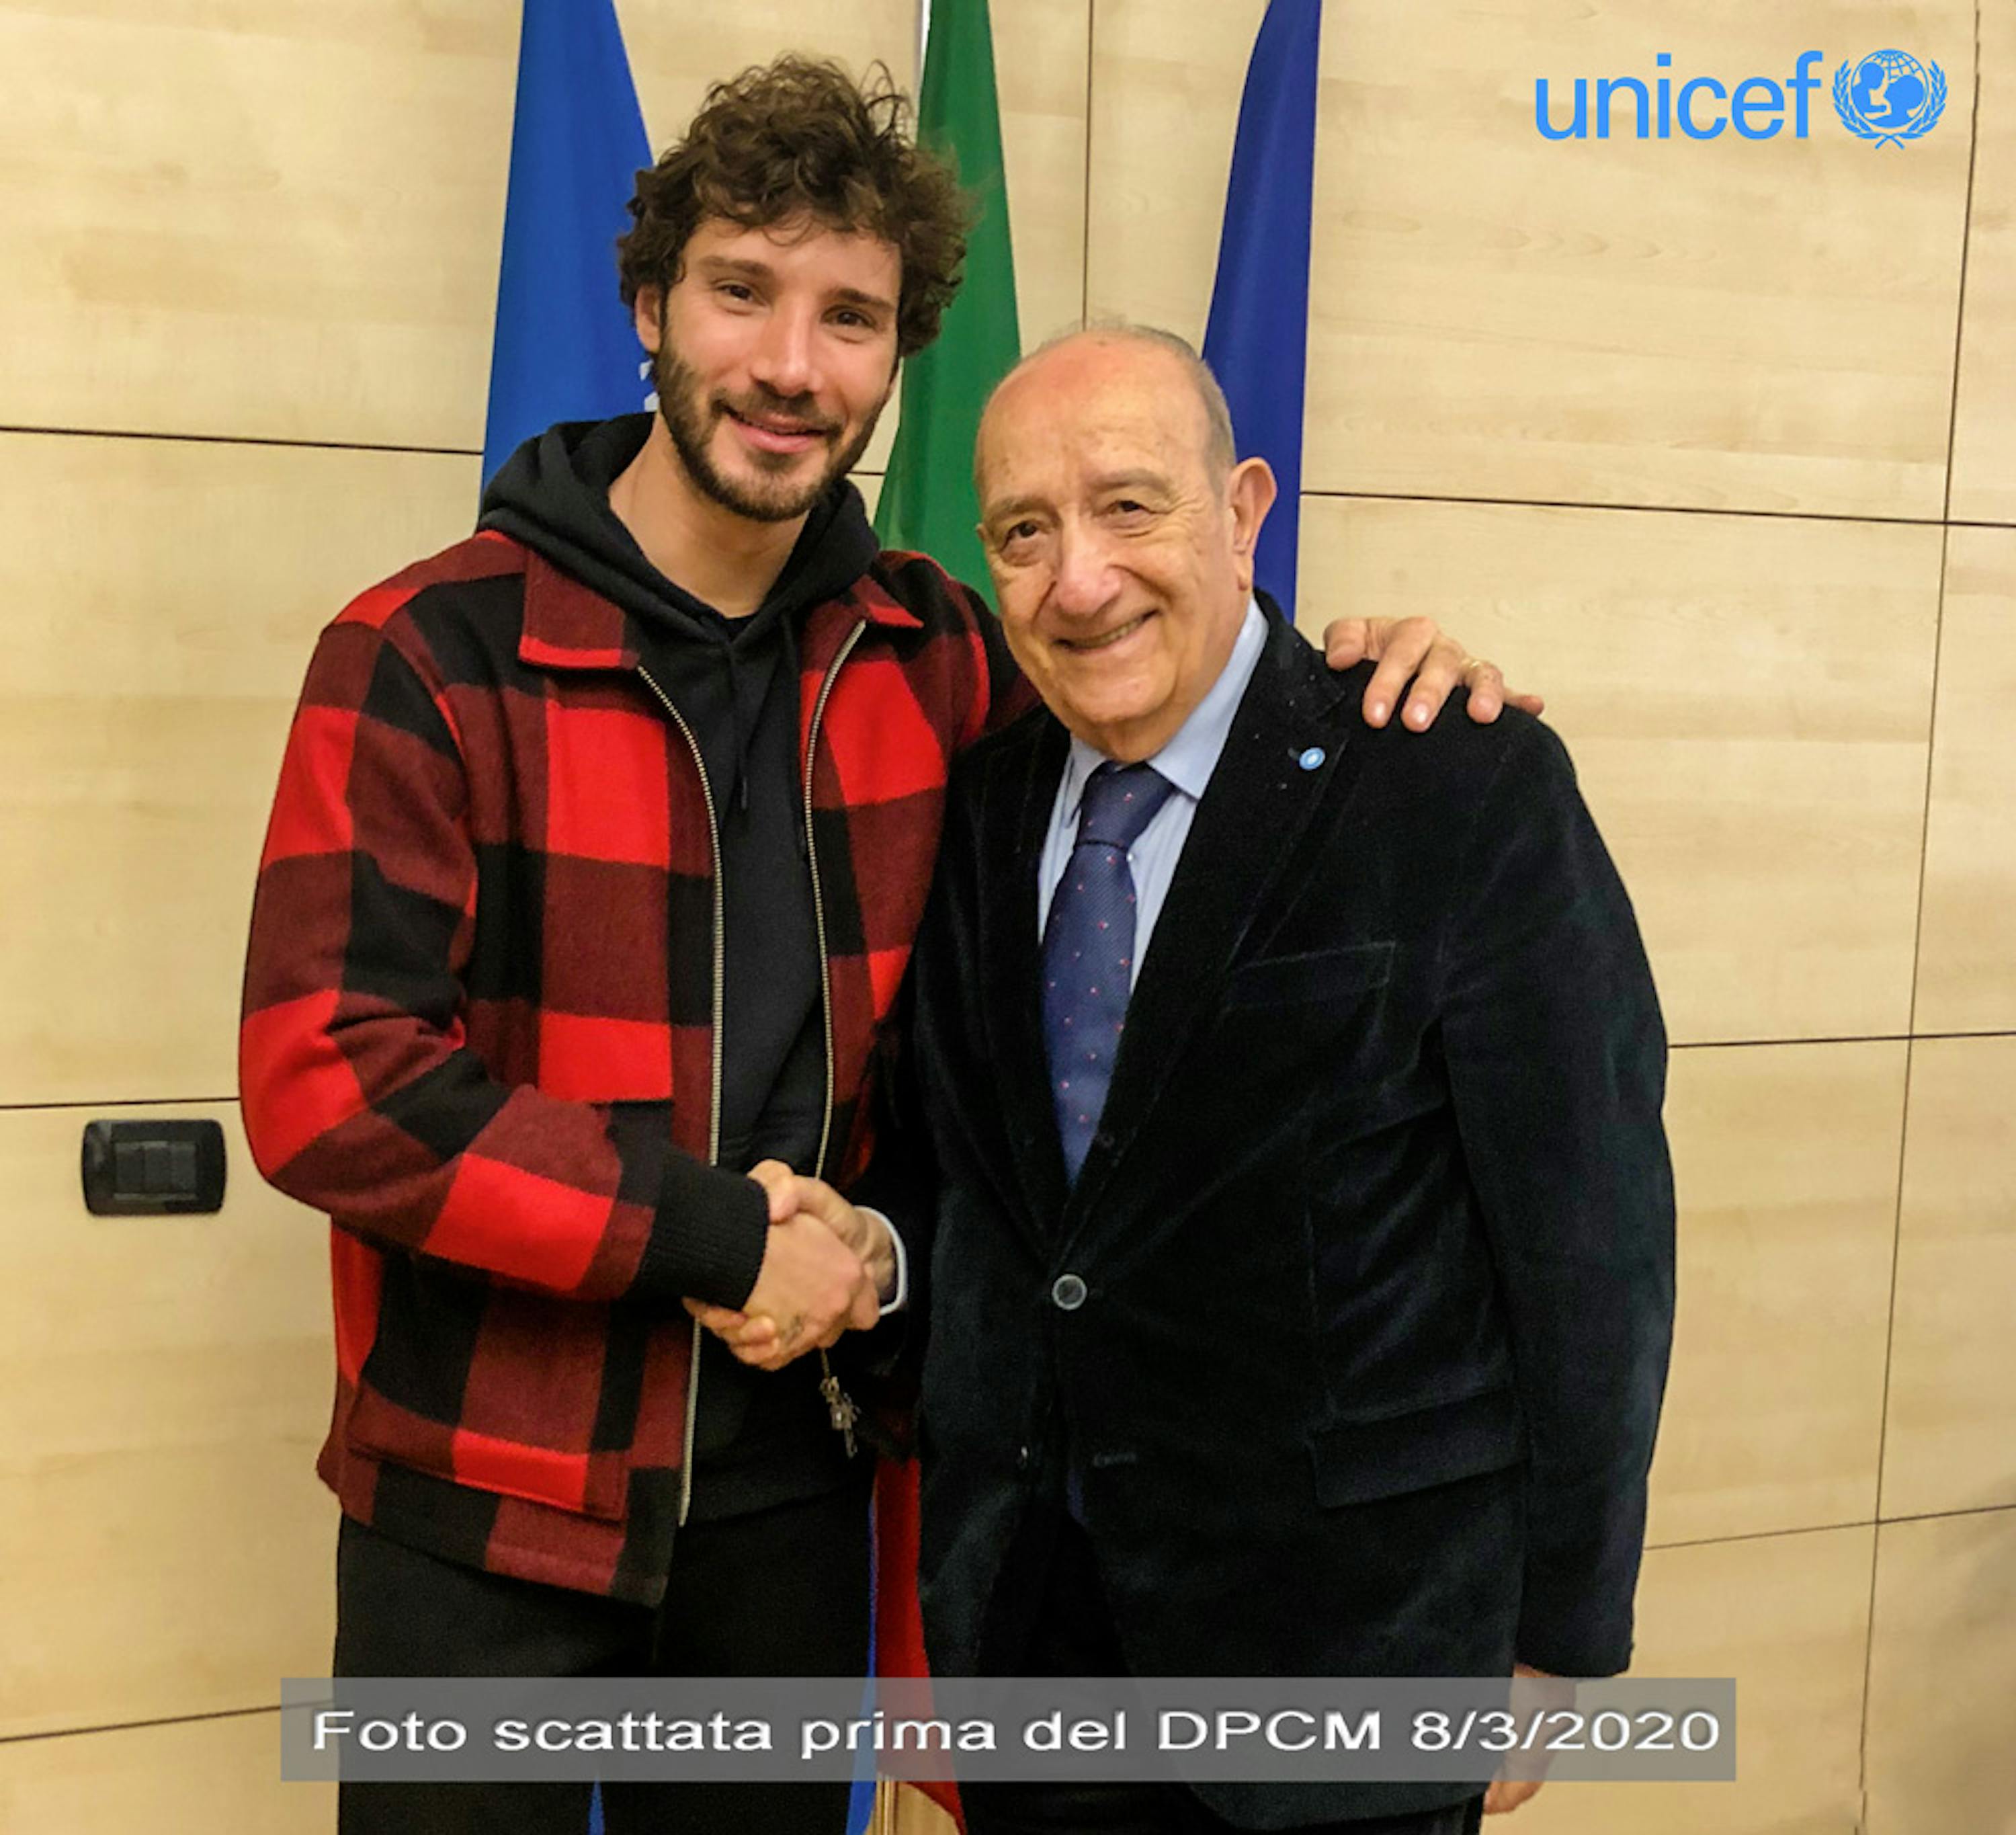 Stefano De Martino insieme al presidente dell'UNICEF Italia Francesco Samengo (foto scattata prima del DPCM 8/3/2020 sul distanziamento sociale) 